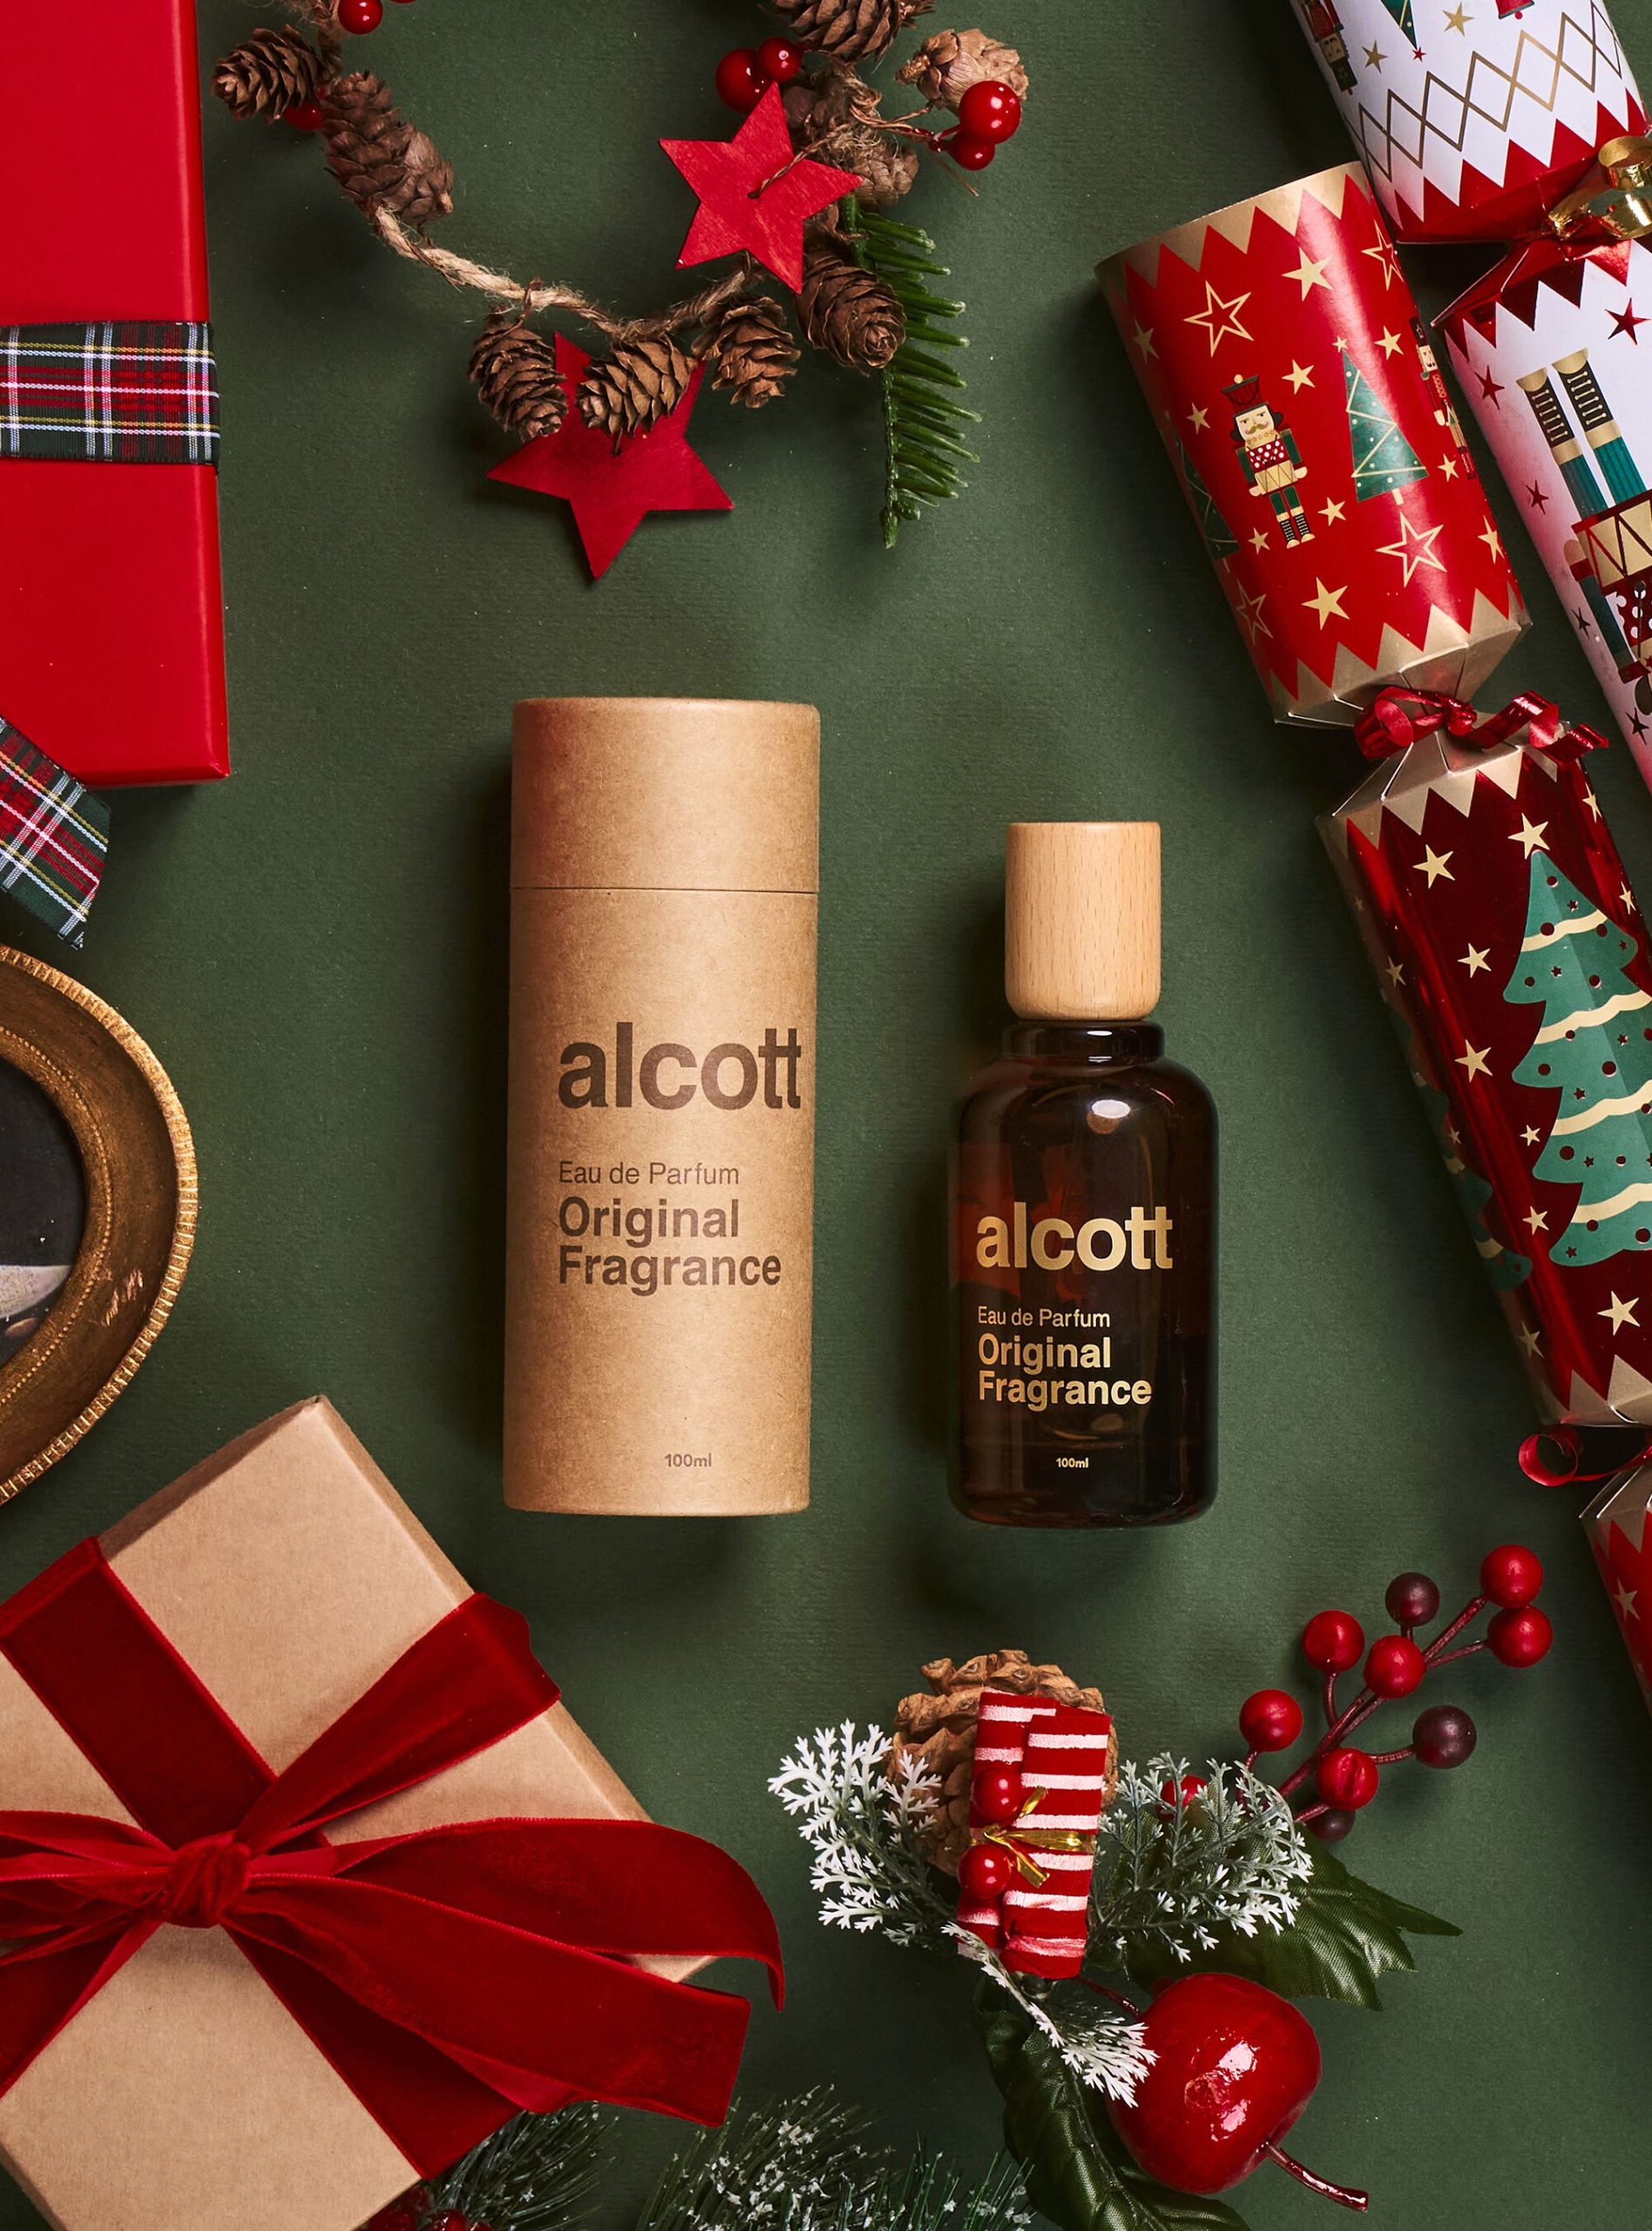 Düfte Männer Empfehlen Alcott Original Fragrance Unico – 1